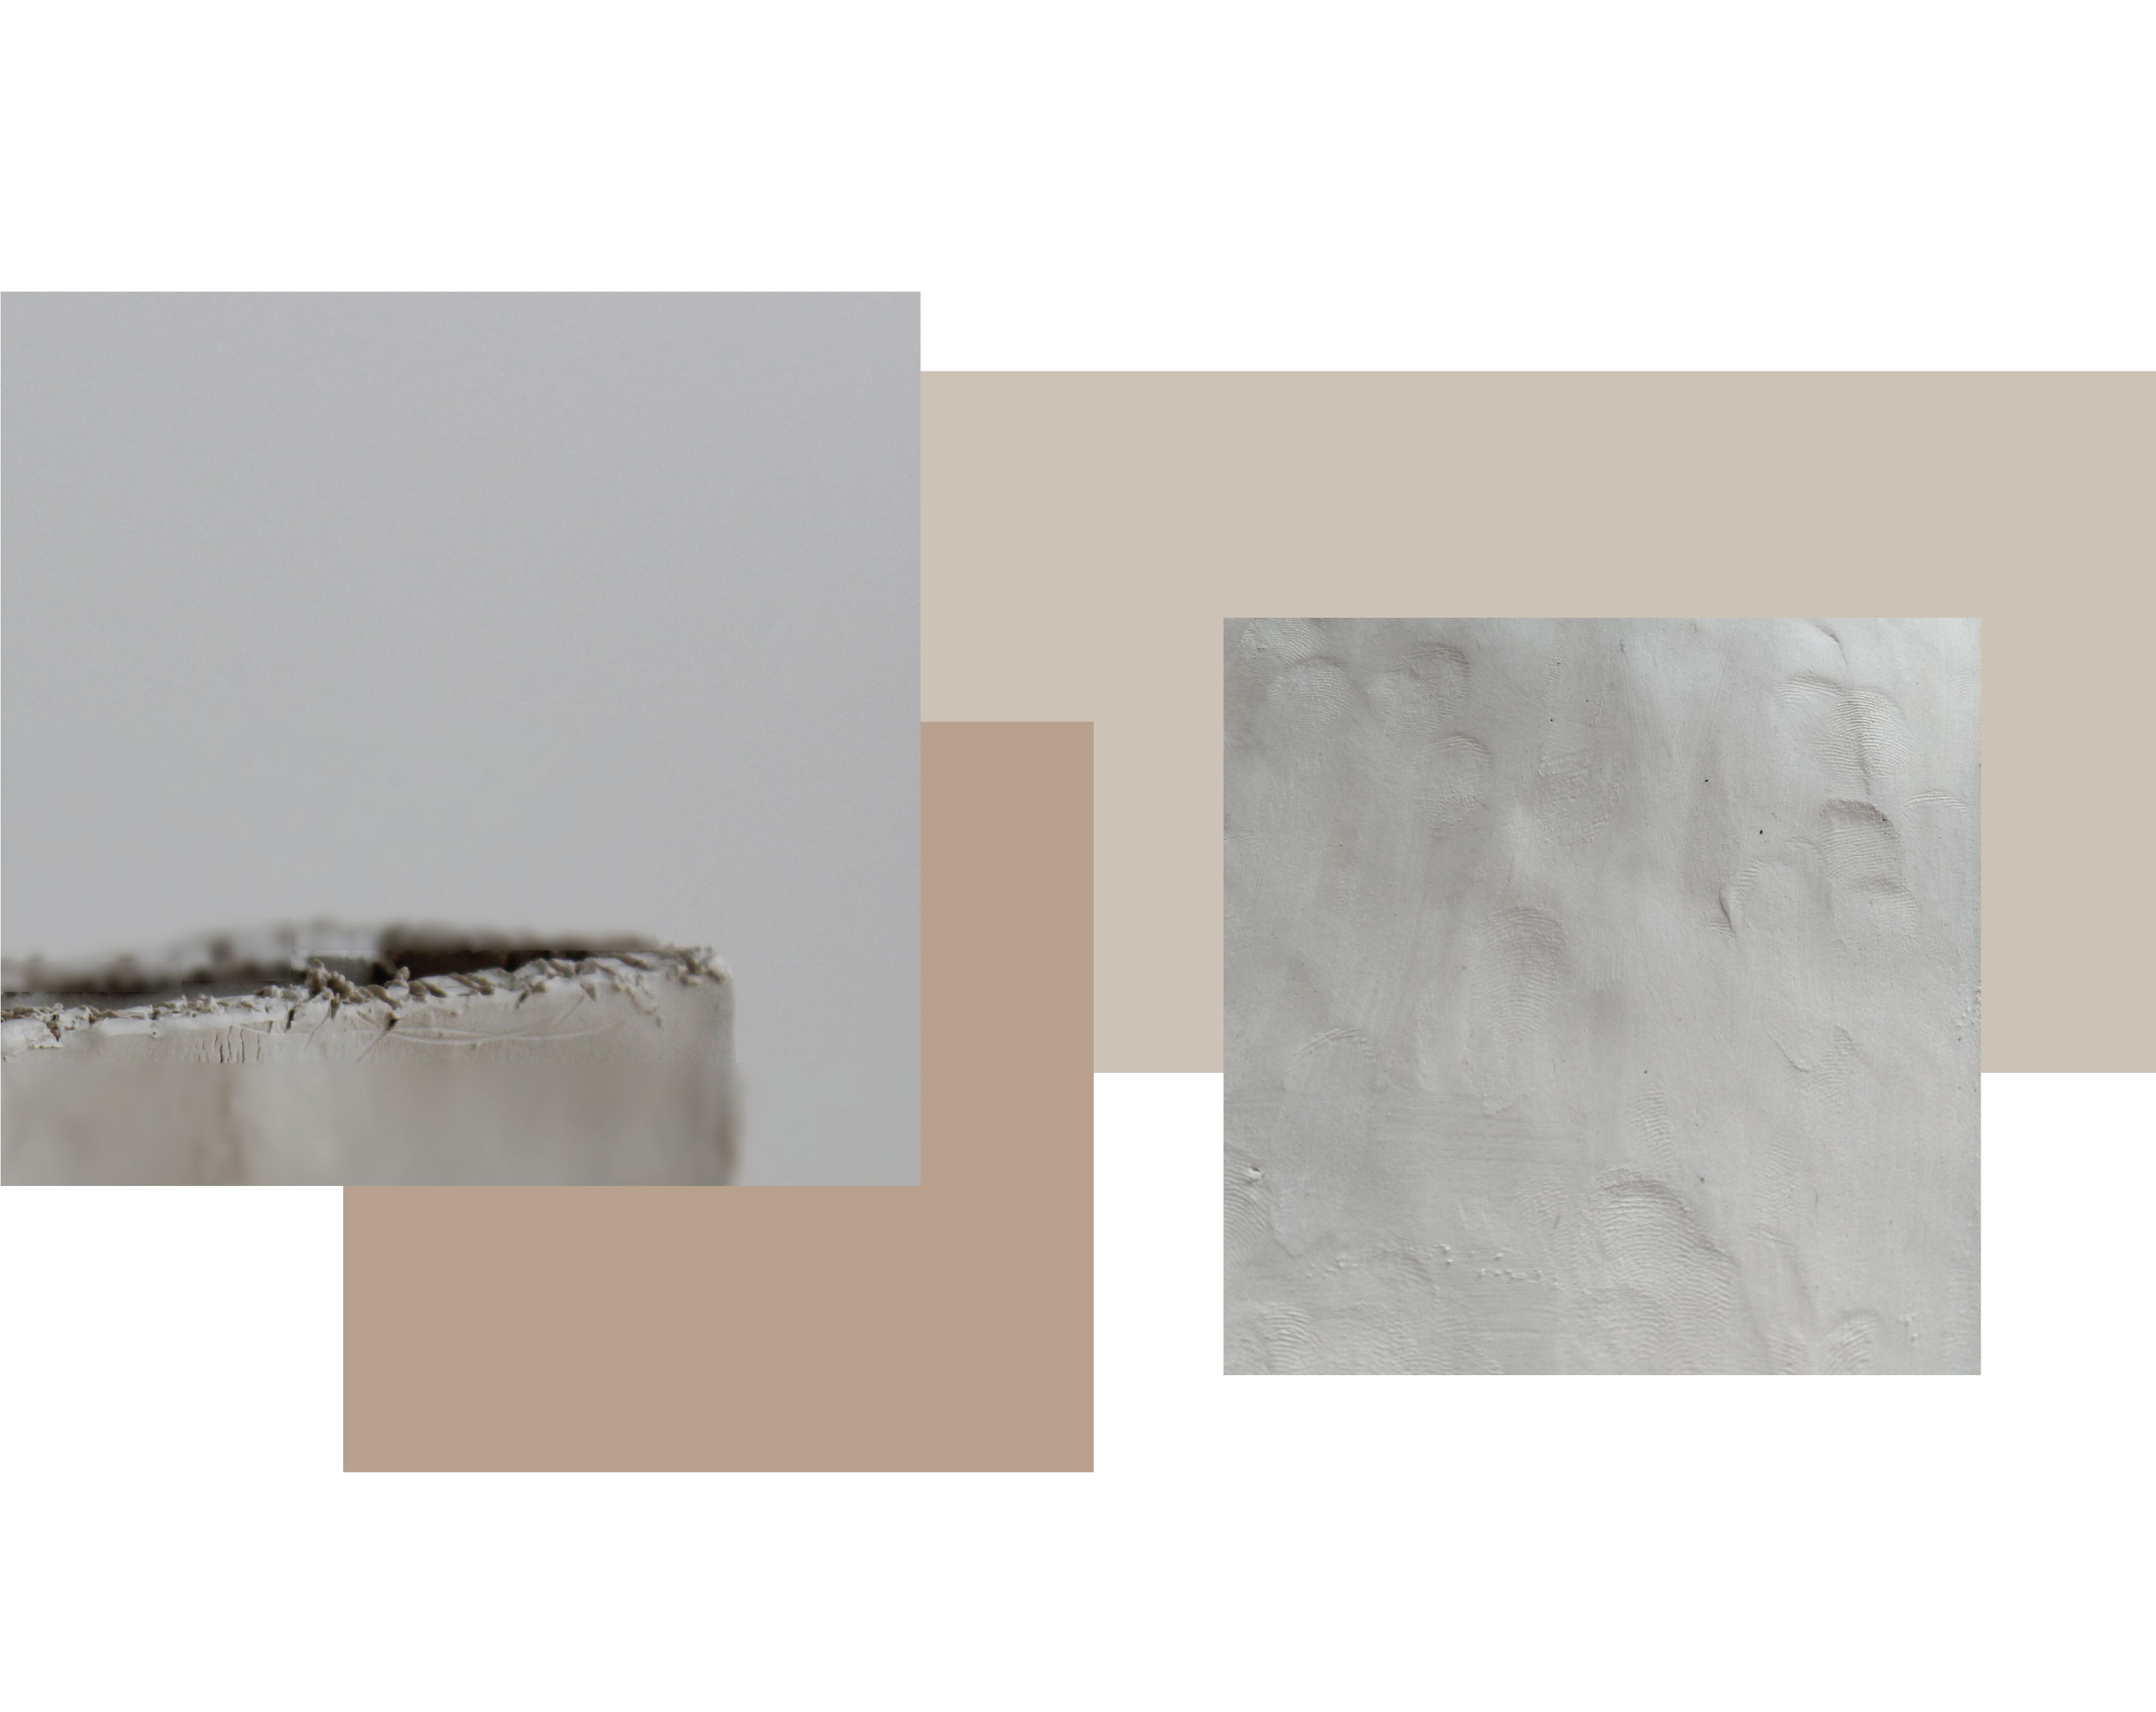 due immagini. uno mostra un primo piano di un bordo graffiato di argilla. Uno mostra dettaglio sulle impronte digitali su una superficie di argilla gres bagnato.